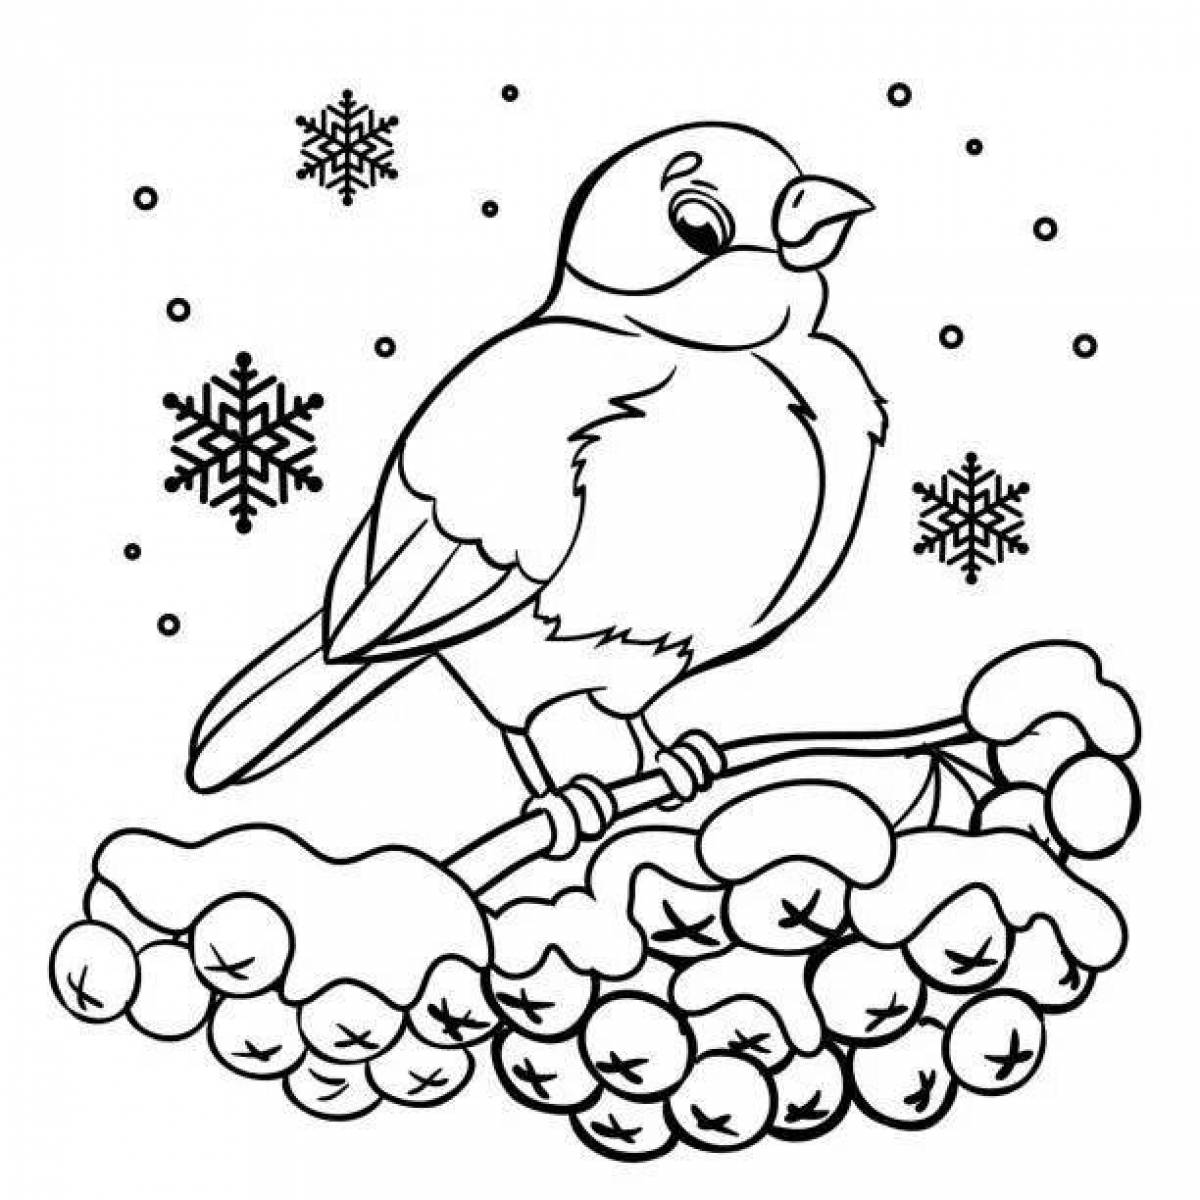 Снегирь птица раскраска для детей (45 фото)